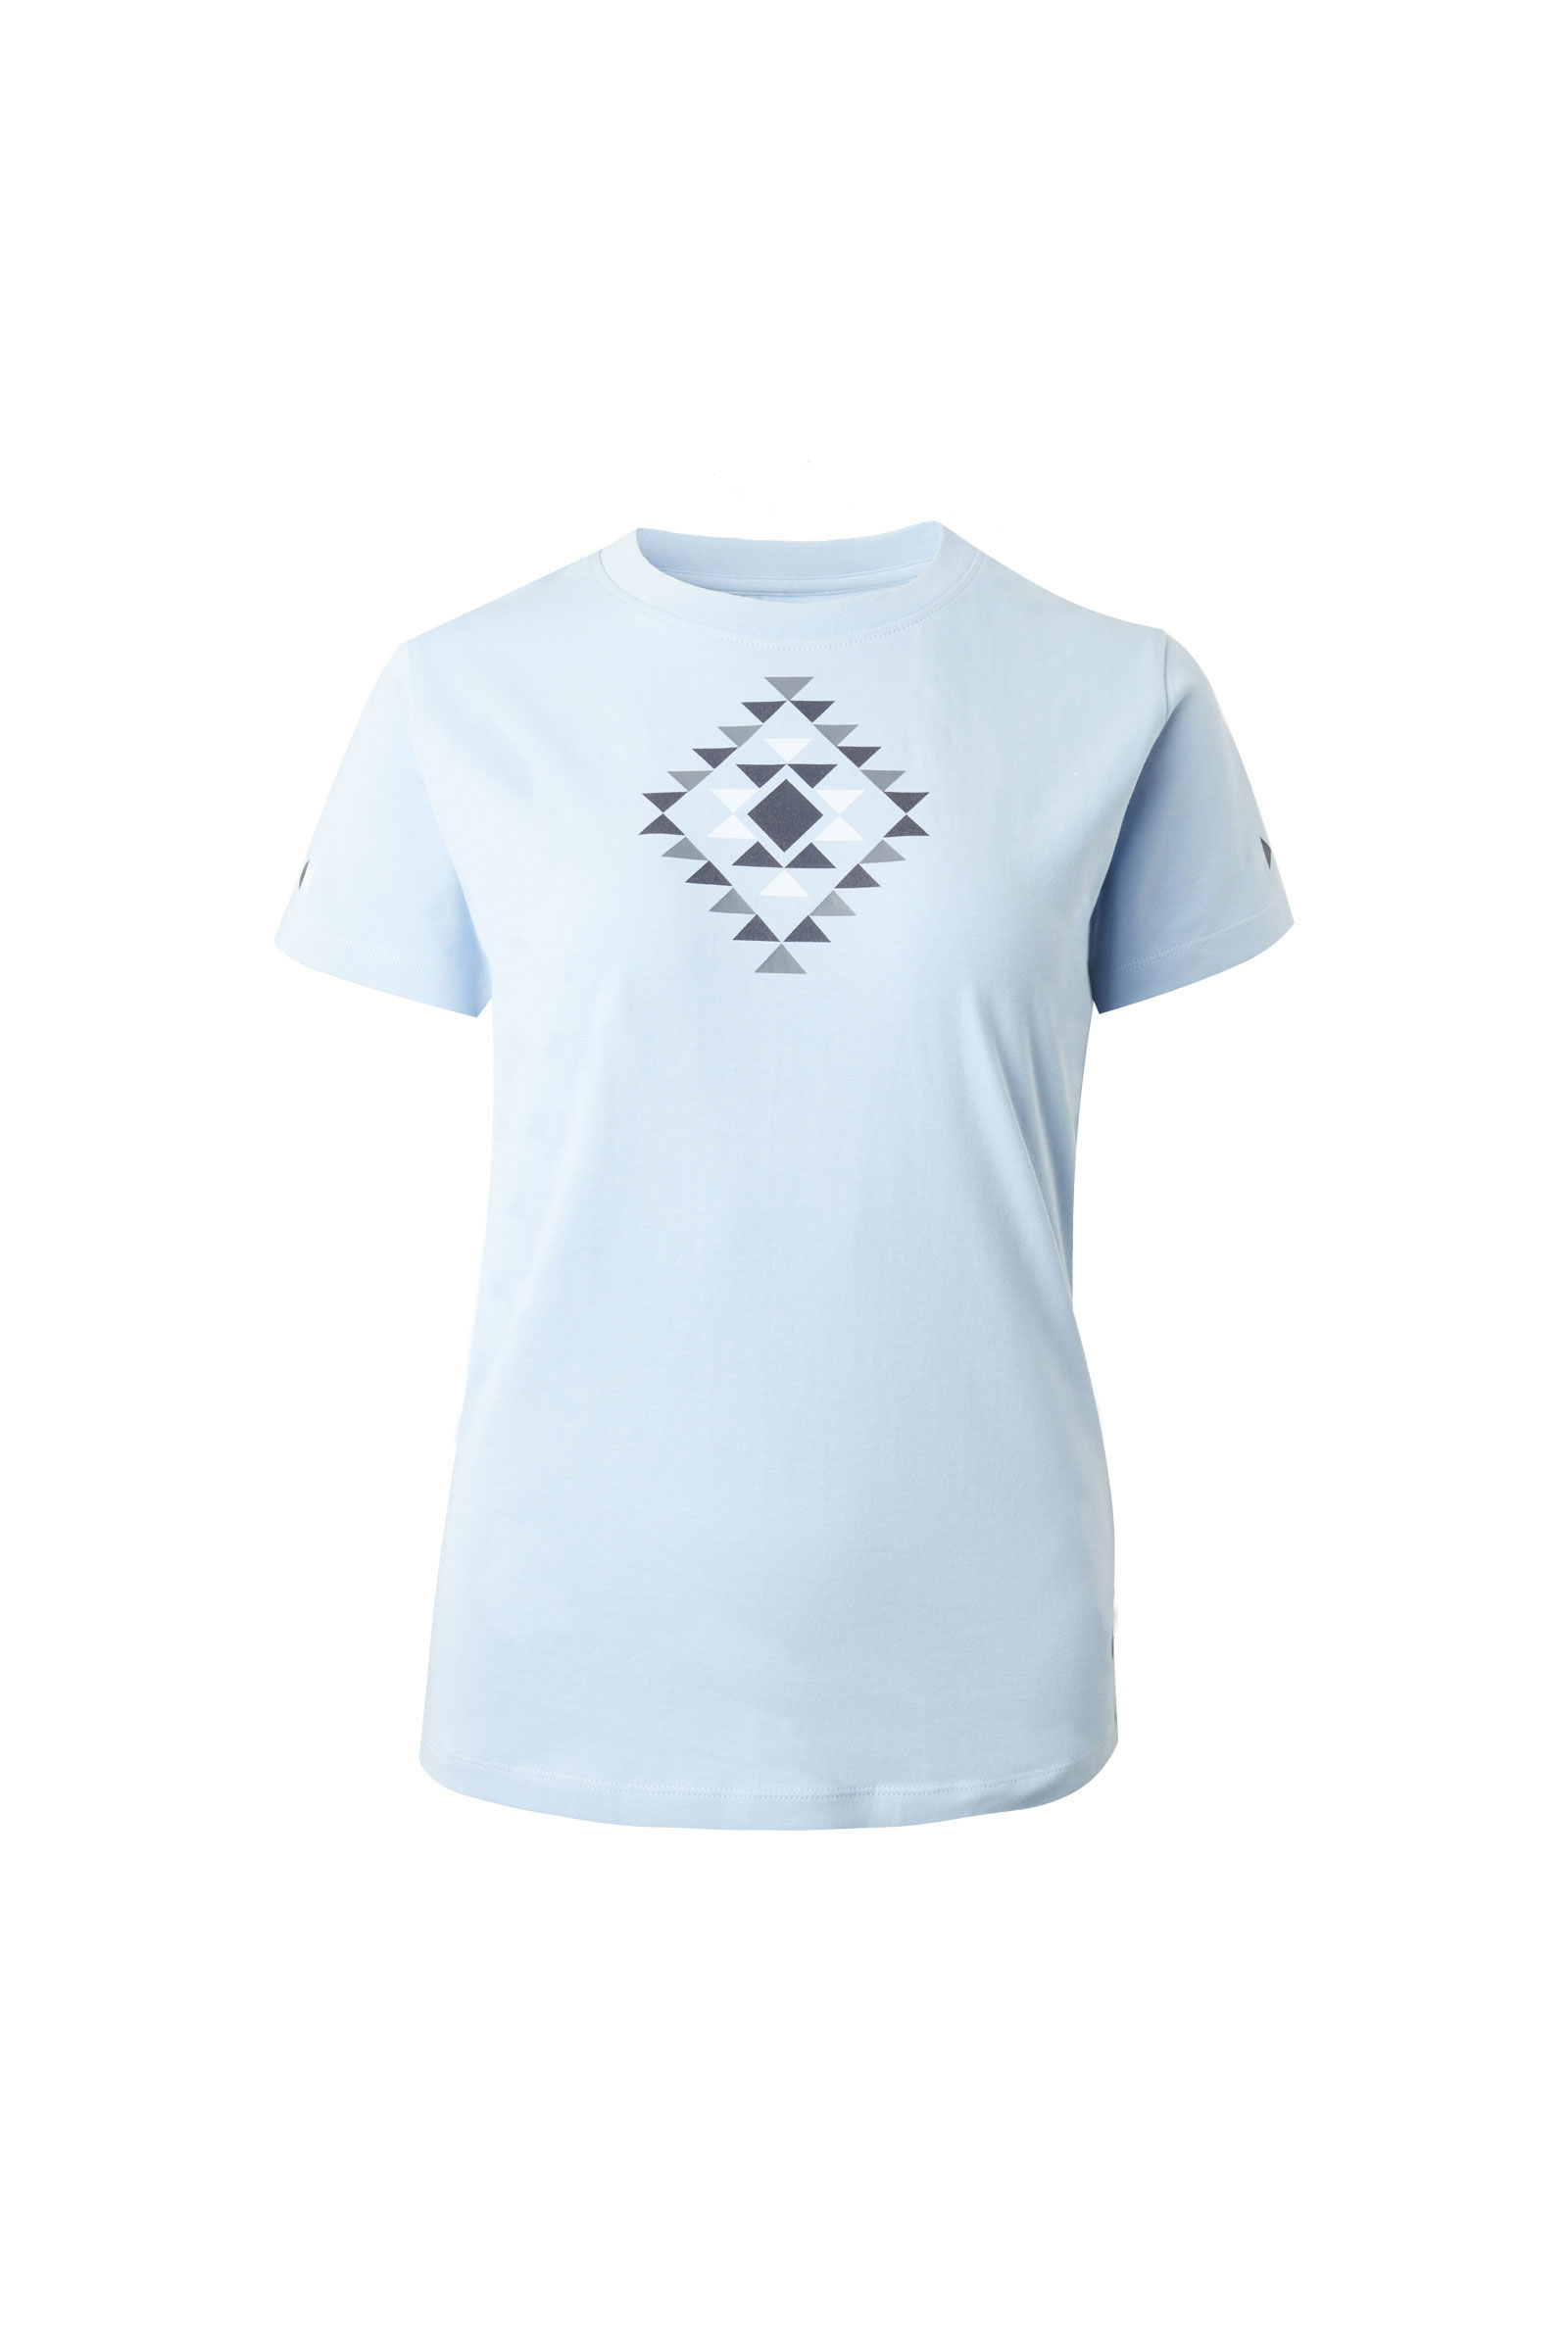 Buy Horze Lily Women's Functional T-Shirt